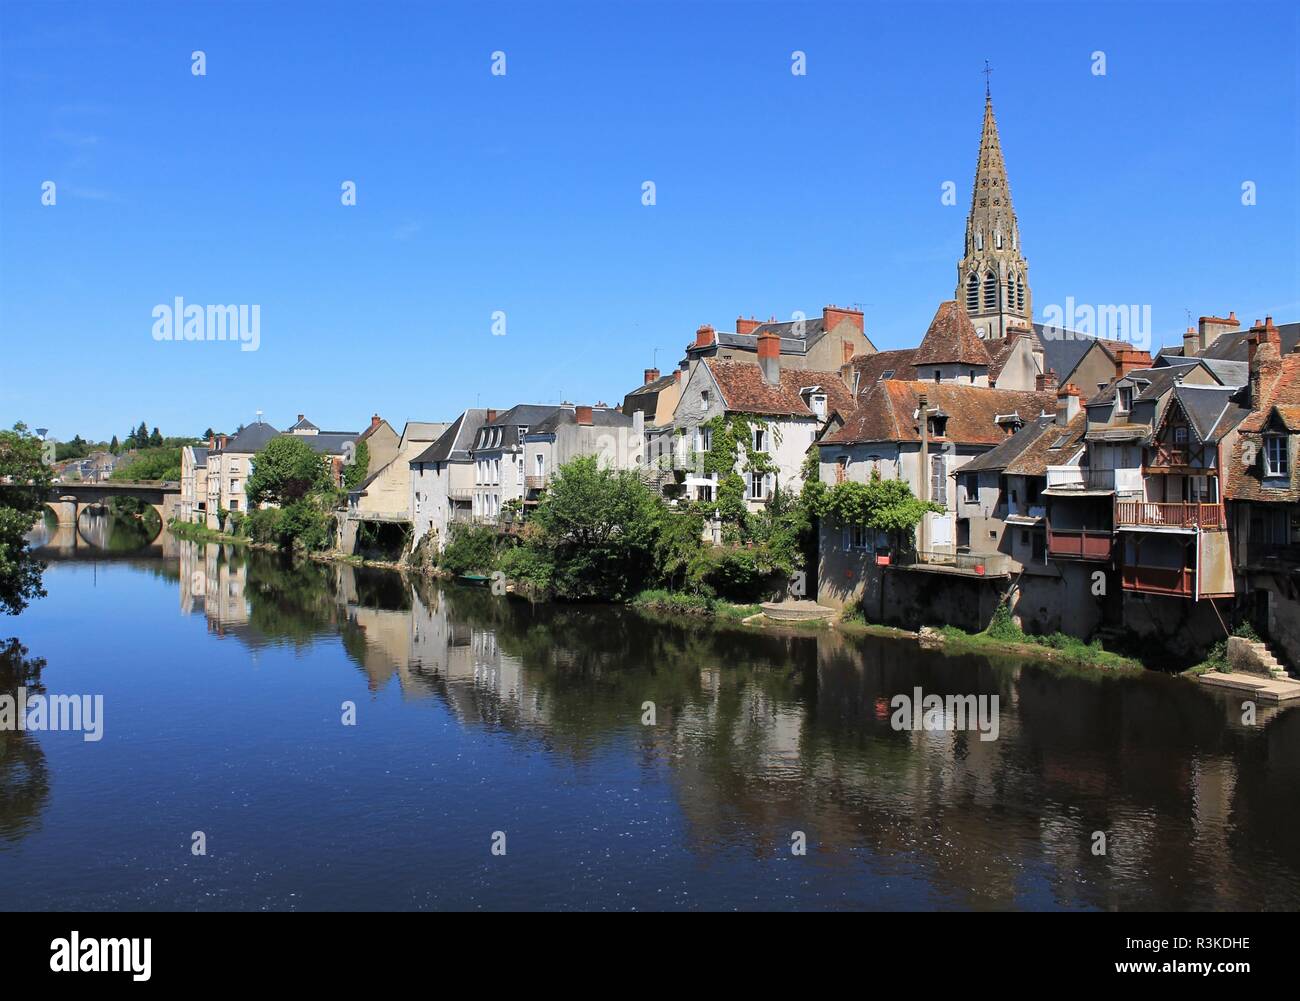 Centre historique de la ville d'Argenton sur Creuse appelée la Venise du Berry, Berry - Indre, France Banque D'Images